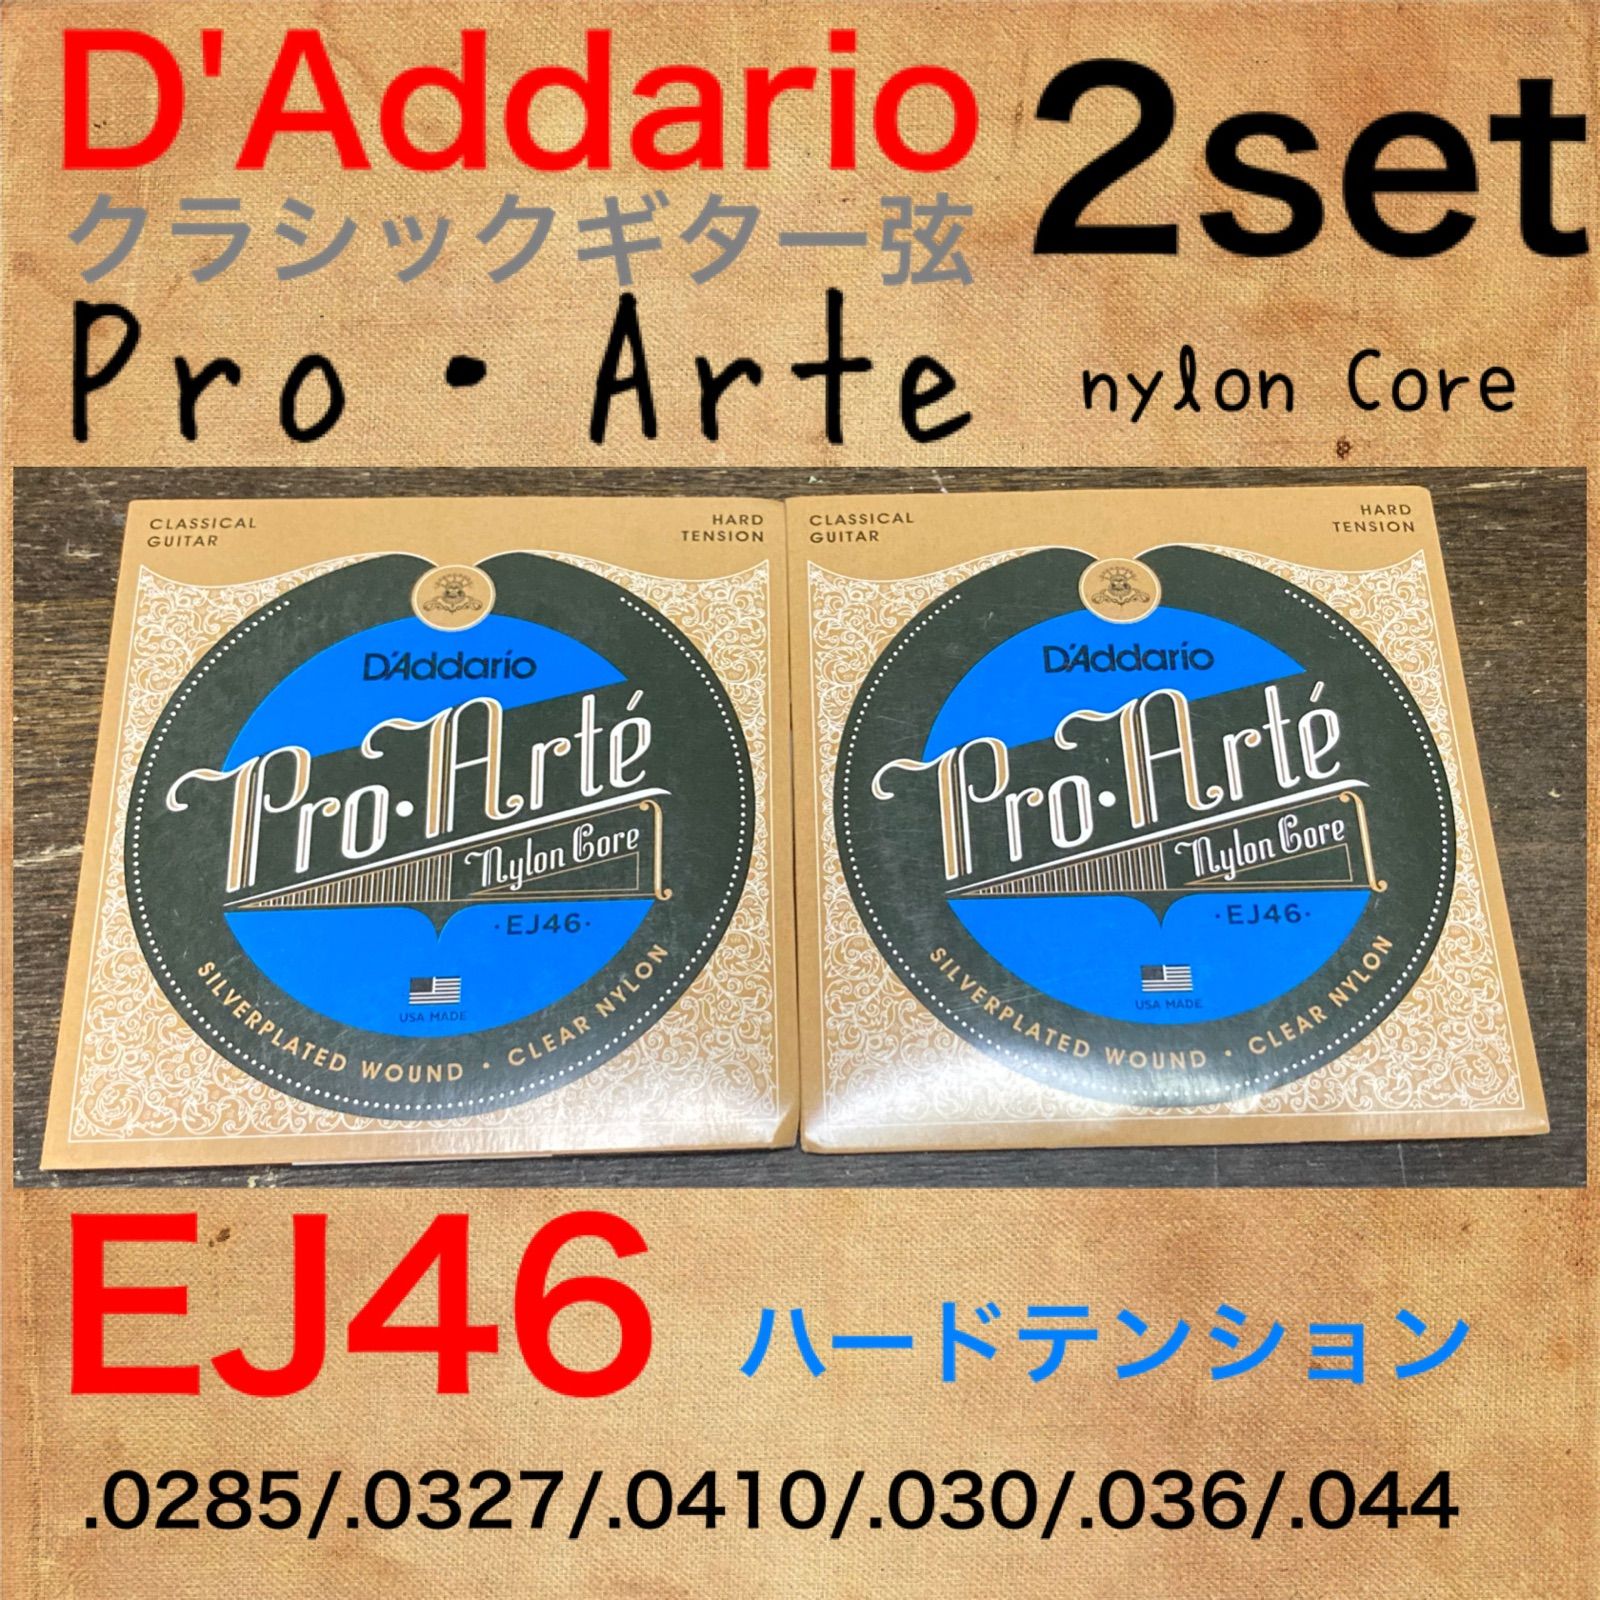 D'Addario ダダリオ クラシックギター弦 プロアルテ Silver Clear Hard EJ46 x 10セット 国内正規品